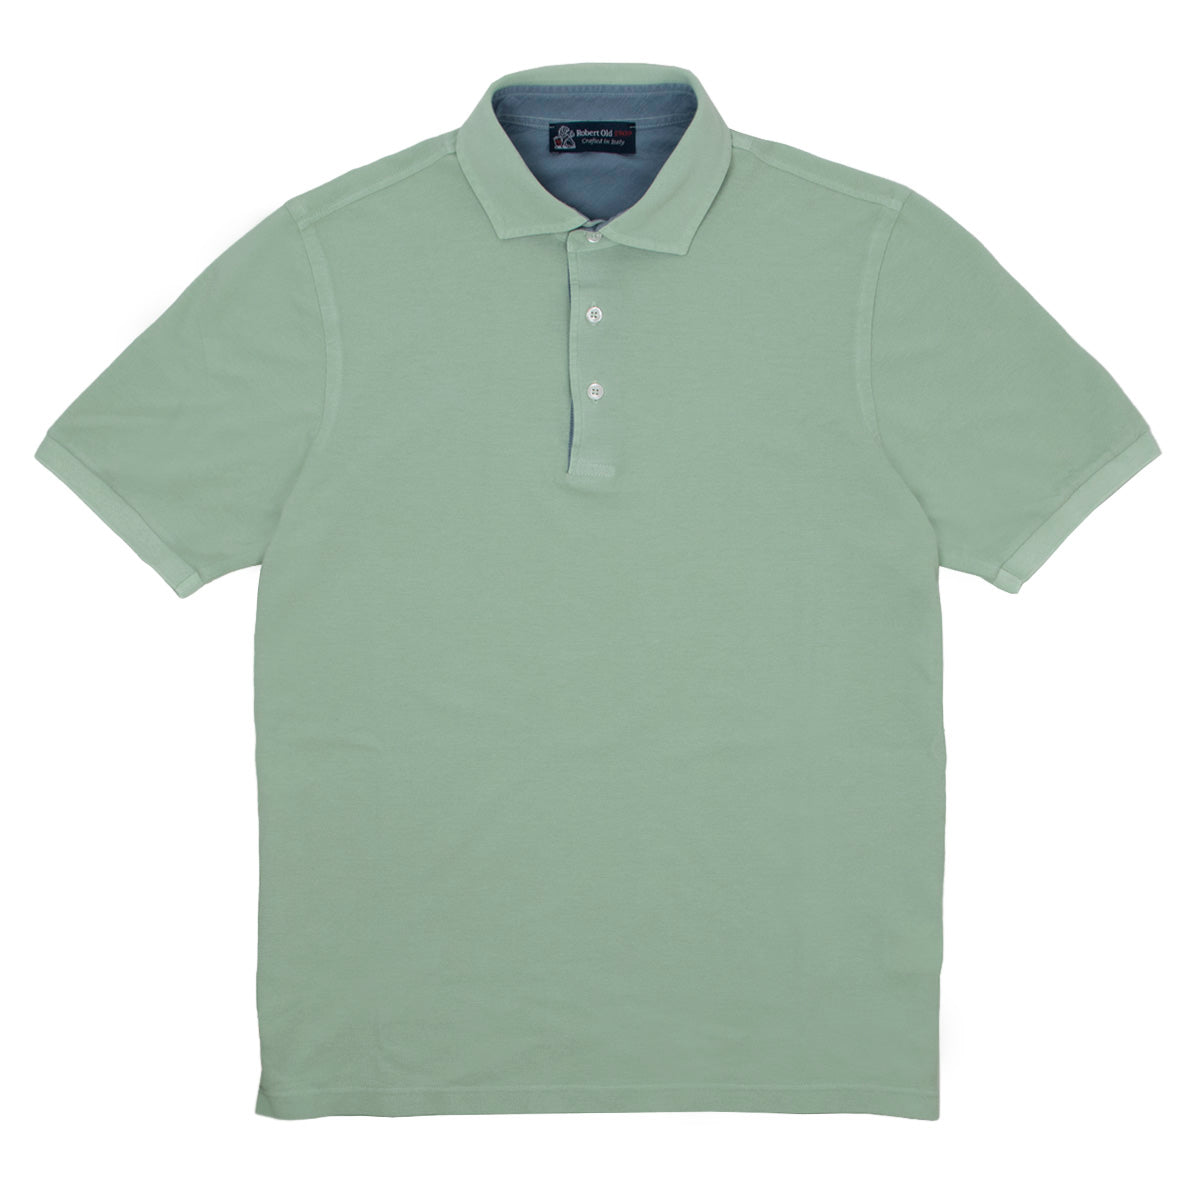 Green & Blue 100% Cotton Short Sleeve Polo Shirt  Robert Old   